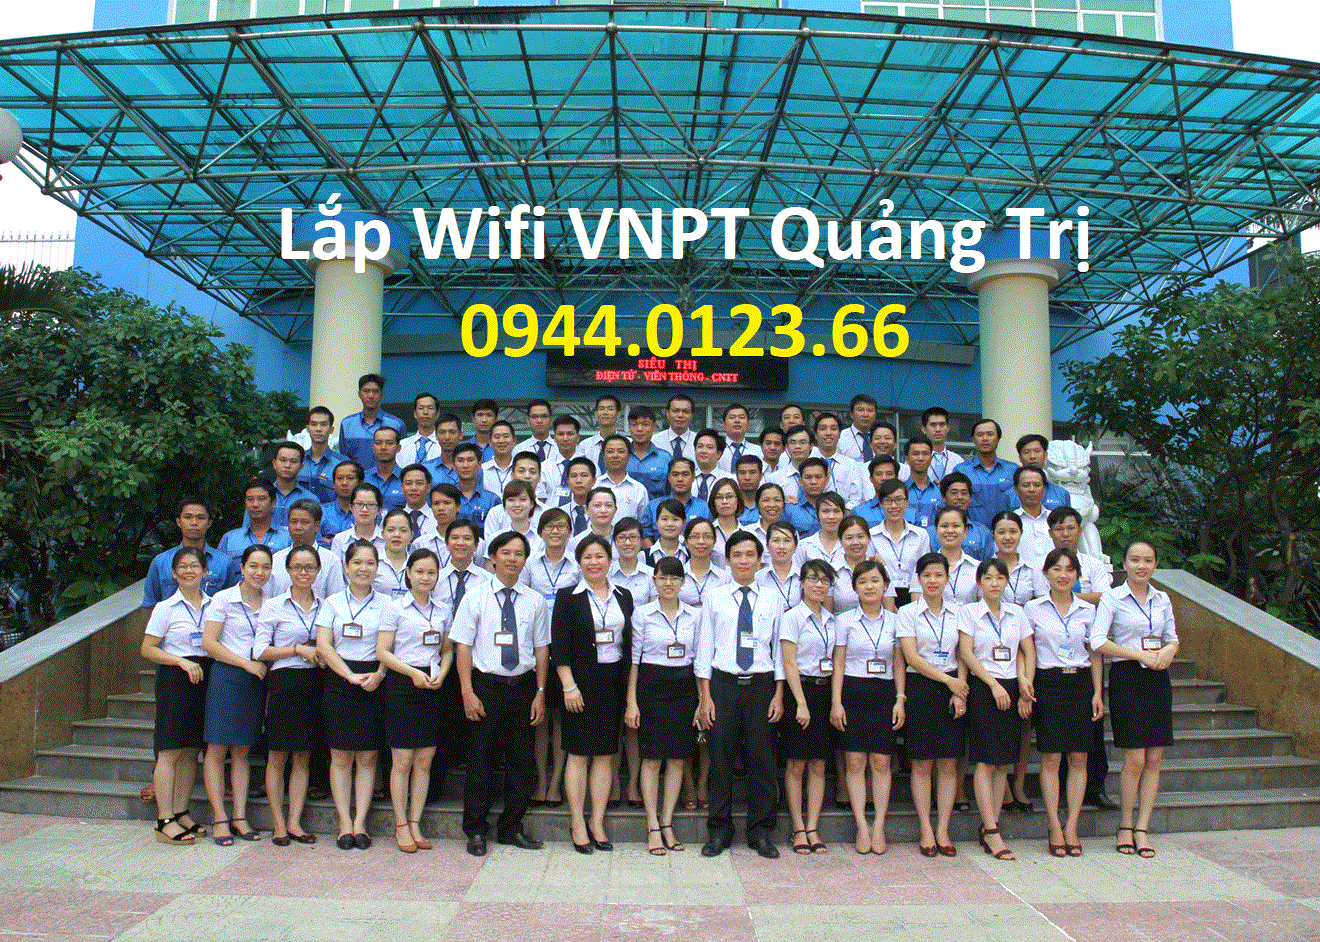 Lap Mang Vnpt Quang Tri, lắp mạng vnpt quảng trị, lắp wifi vnpt quảng trị, lắp internet vnpt quảng trị